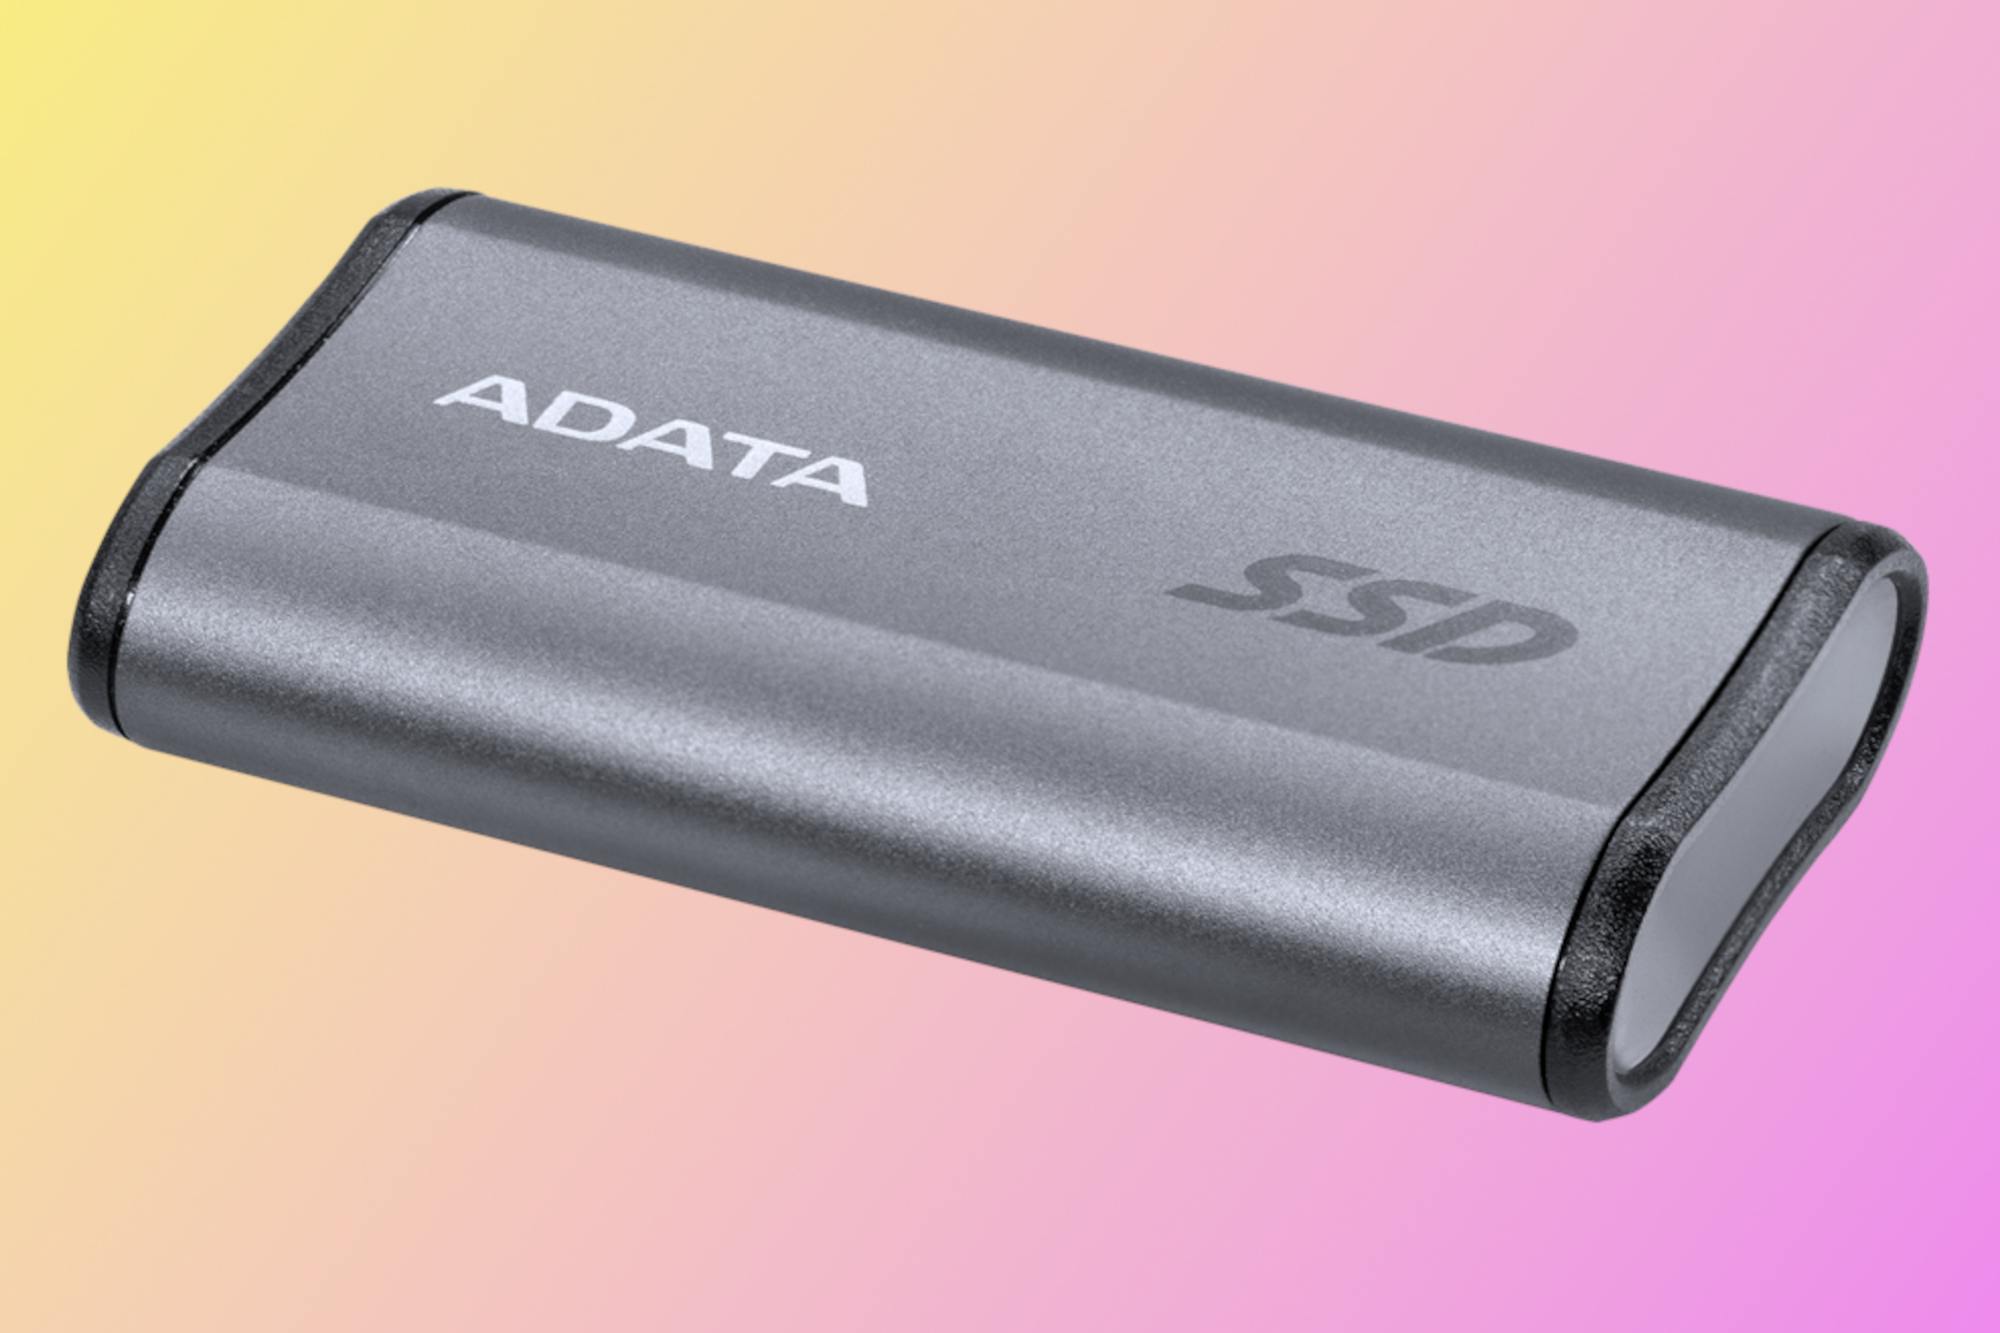 Adata Elite SE880 SSD - Most portable 20Gbps external drive